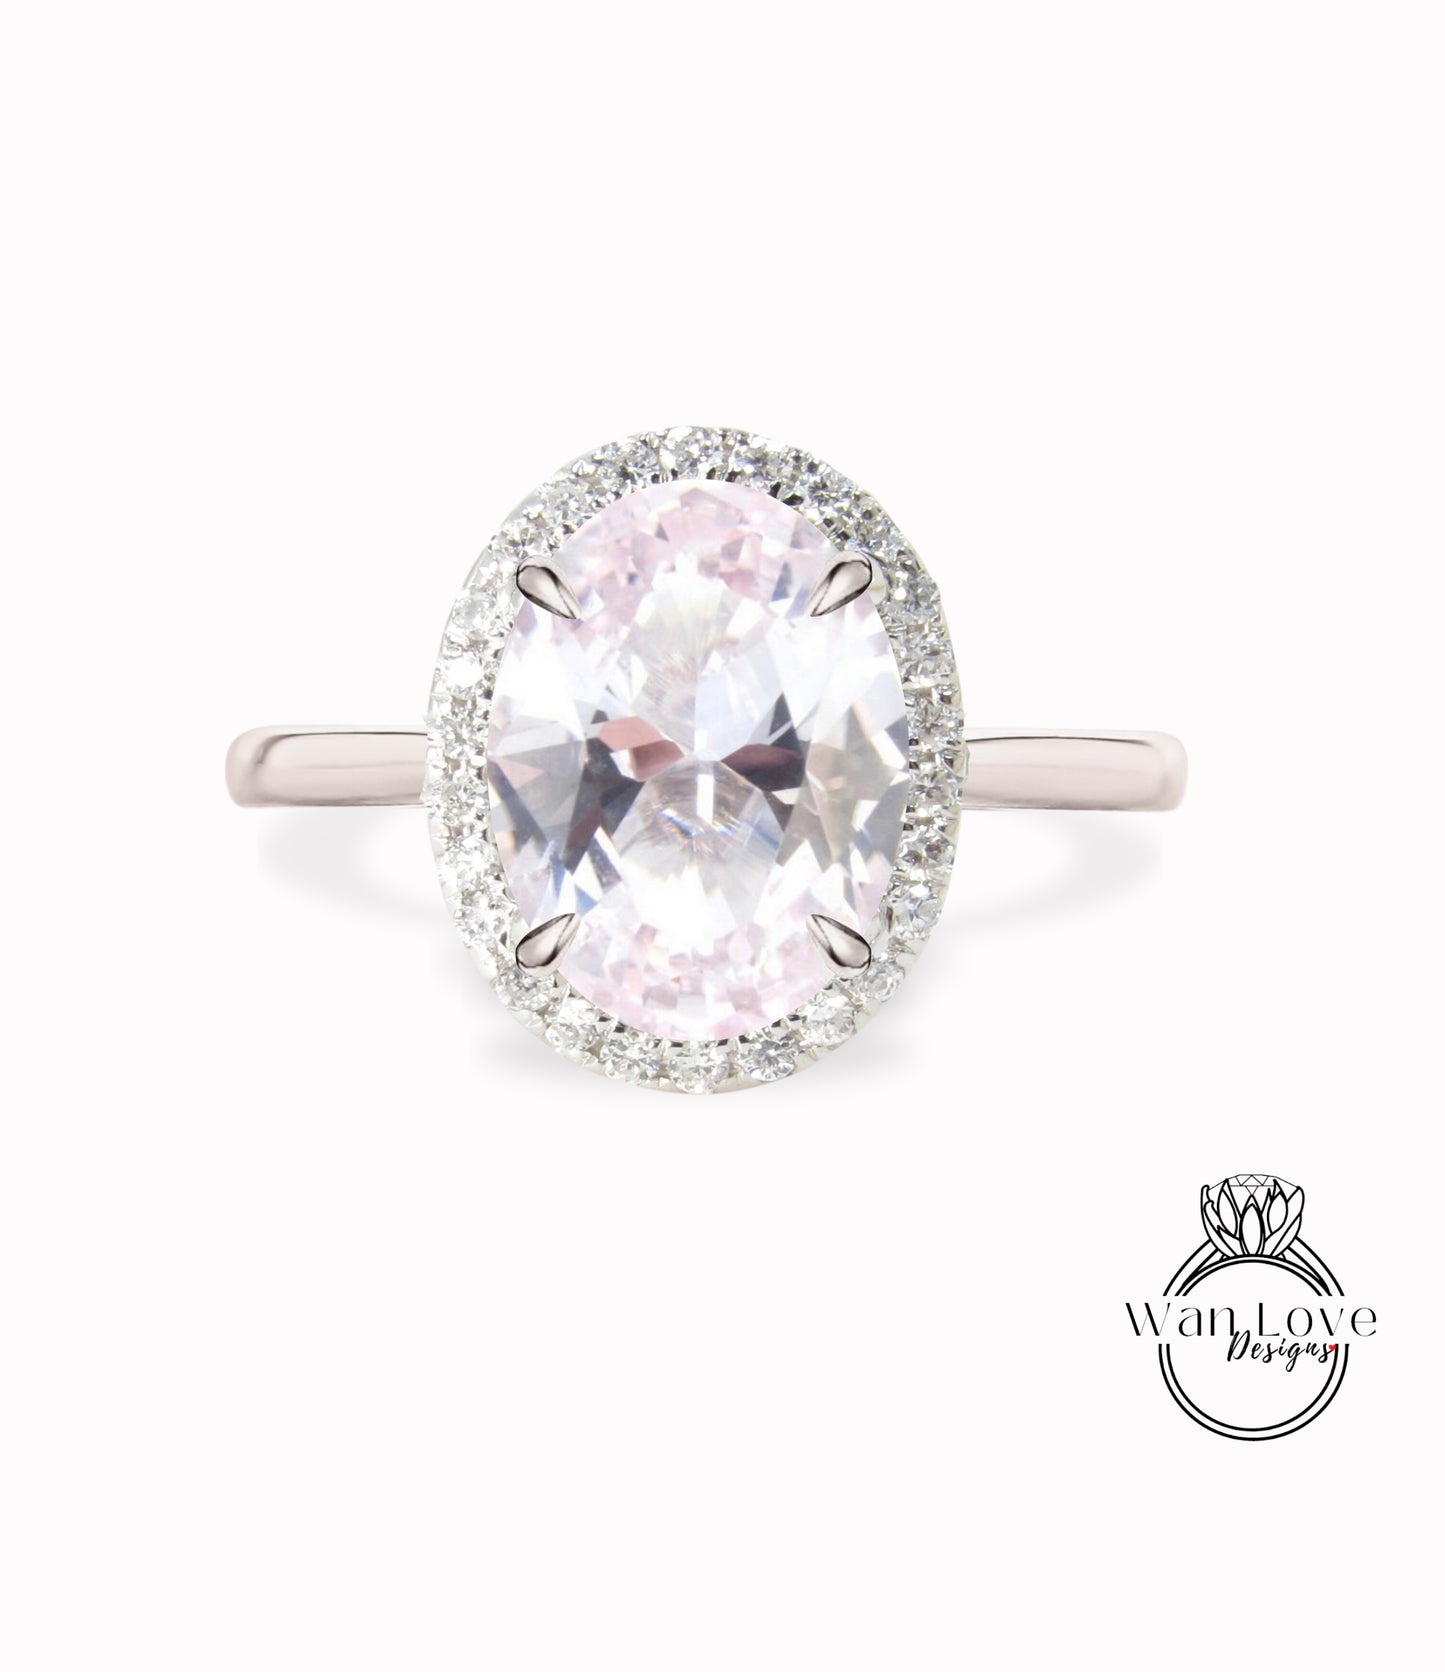 Anello di fidanzamento con zaffiro rosa chiaro a taglio ovale, anello in oro rosa, con diamante, affusolato, semplice, sottile, delicato, anello di promessa per l'anniversario in stile art deco